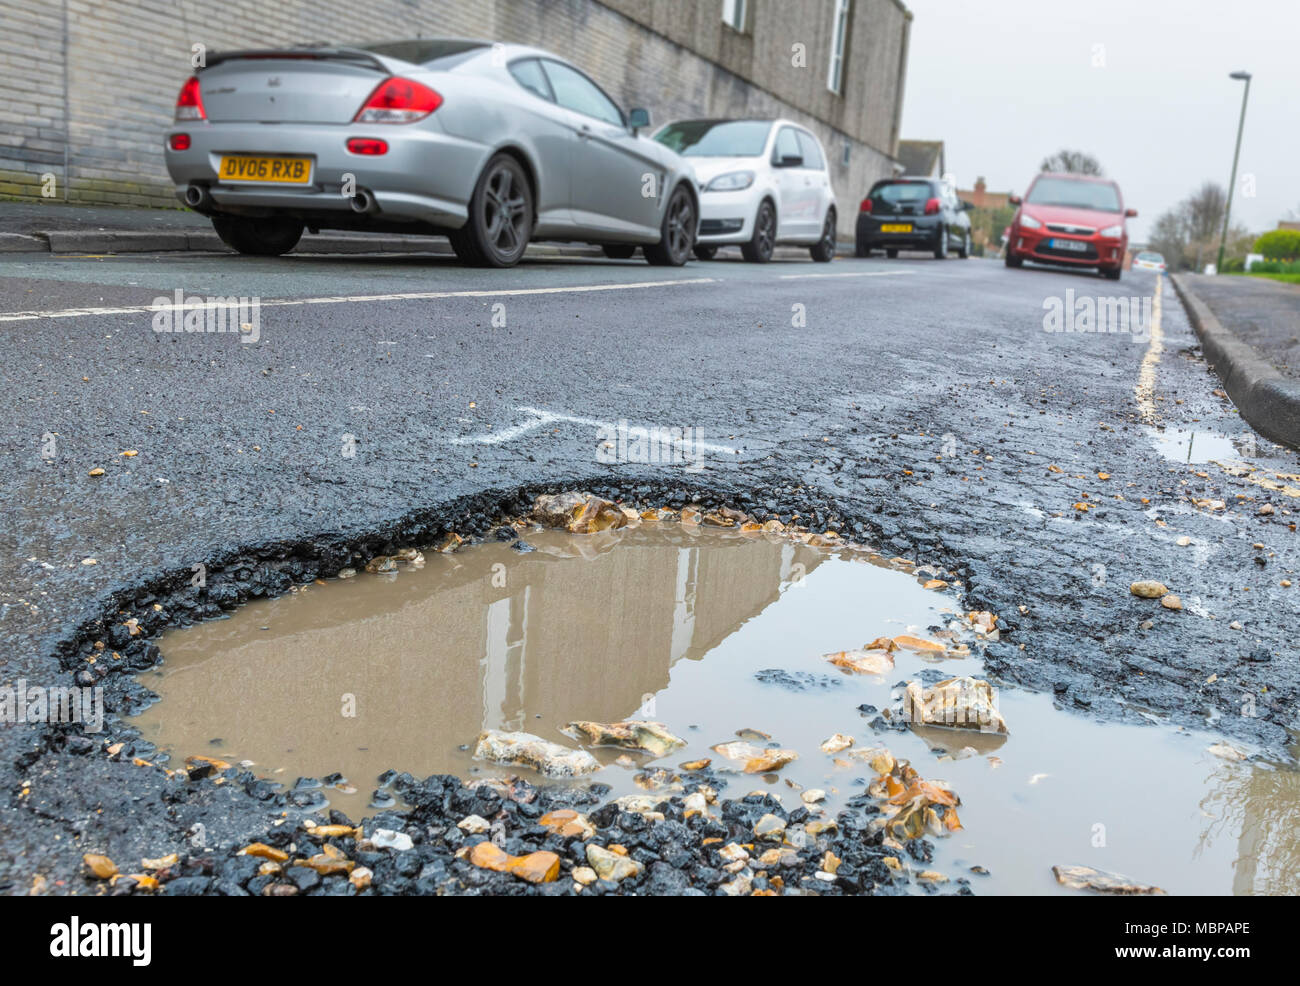 Schlagloch auf einer Asphaltstraße mit Regenwasser in England, Großbritannien. Beschädigte Fahrbahn. Straße, die sich in Not oder reparieren. Große Schlaglöcher. Sie auf das riesige Schlagloch. Stockfoto